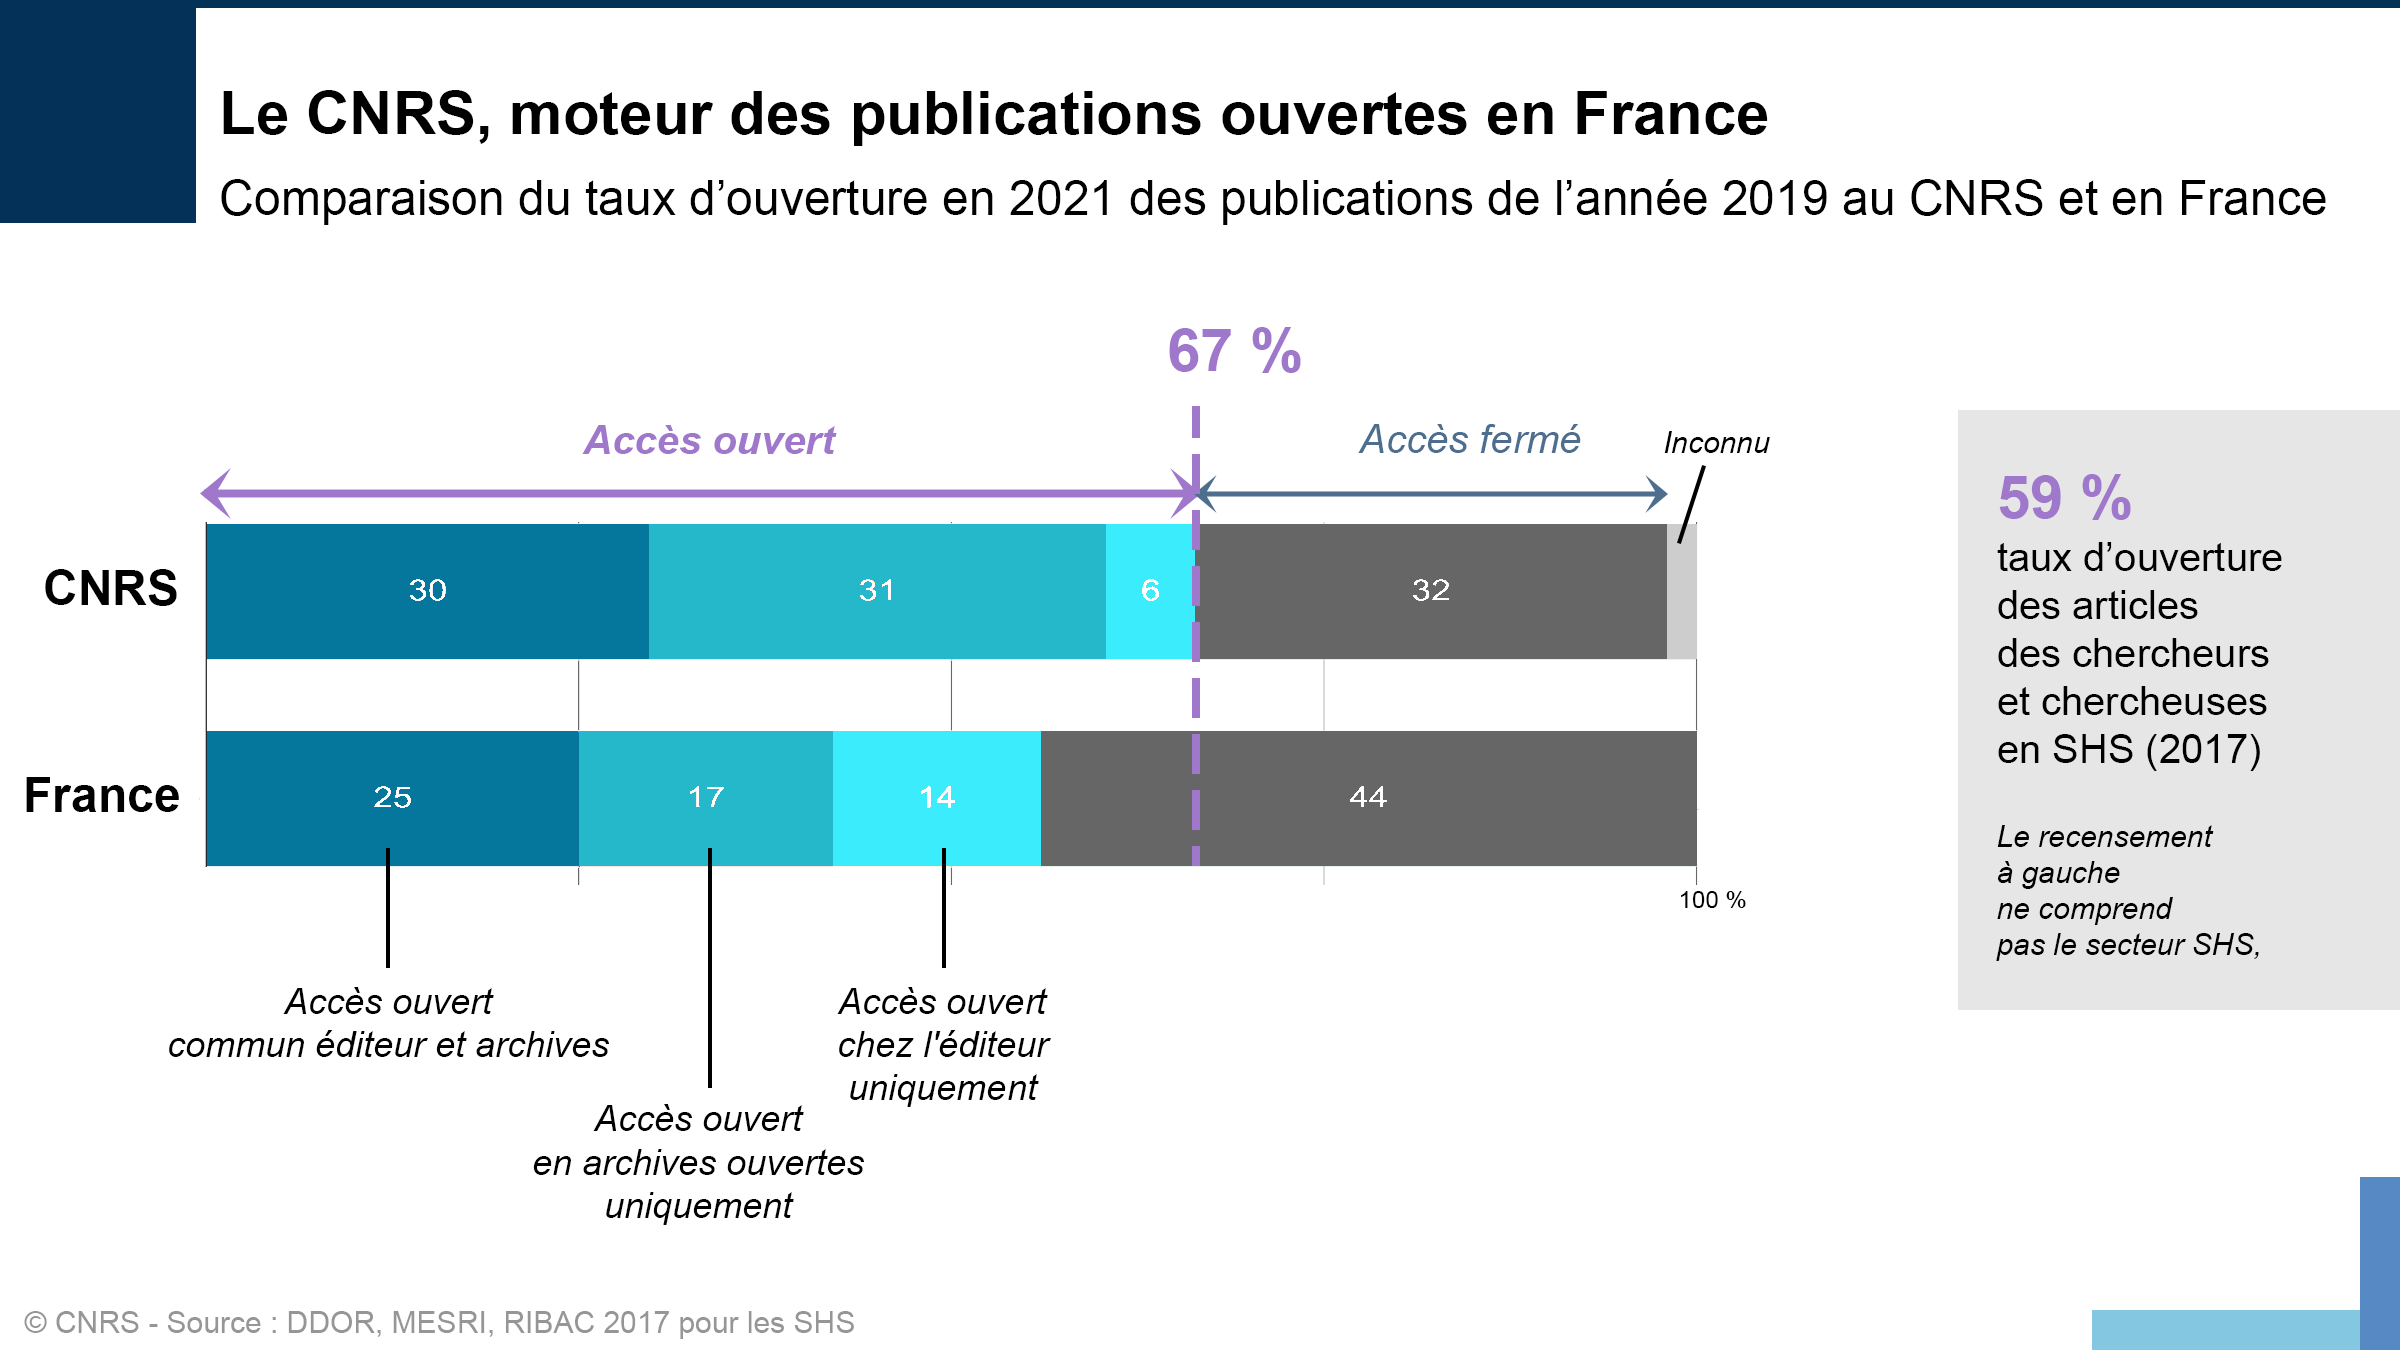 Statistiques sur les publications ouvertes ou fermées au CNRS et en France